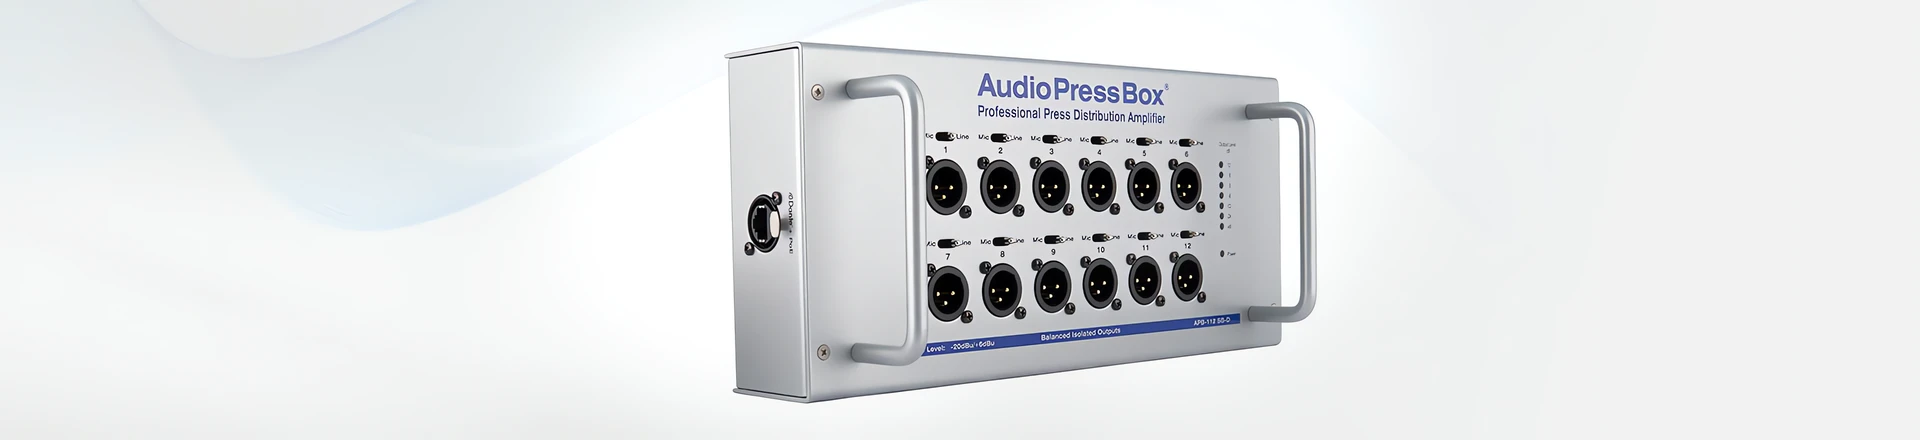 AudioPressBox APB-112 SB-D - uniwersalne rozwiązanie do dystrybucji dźwięku live